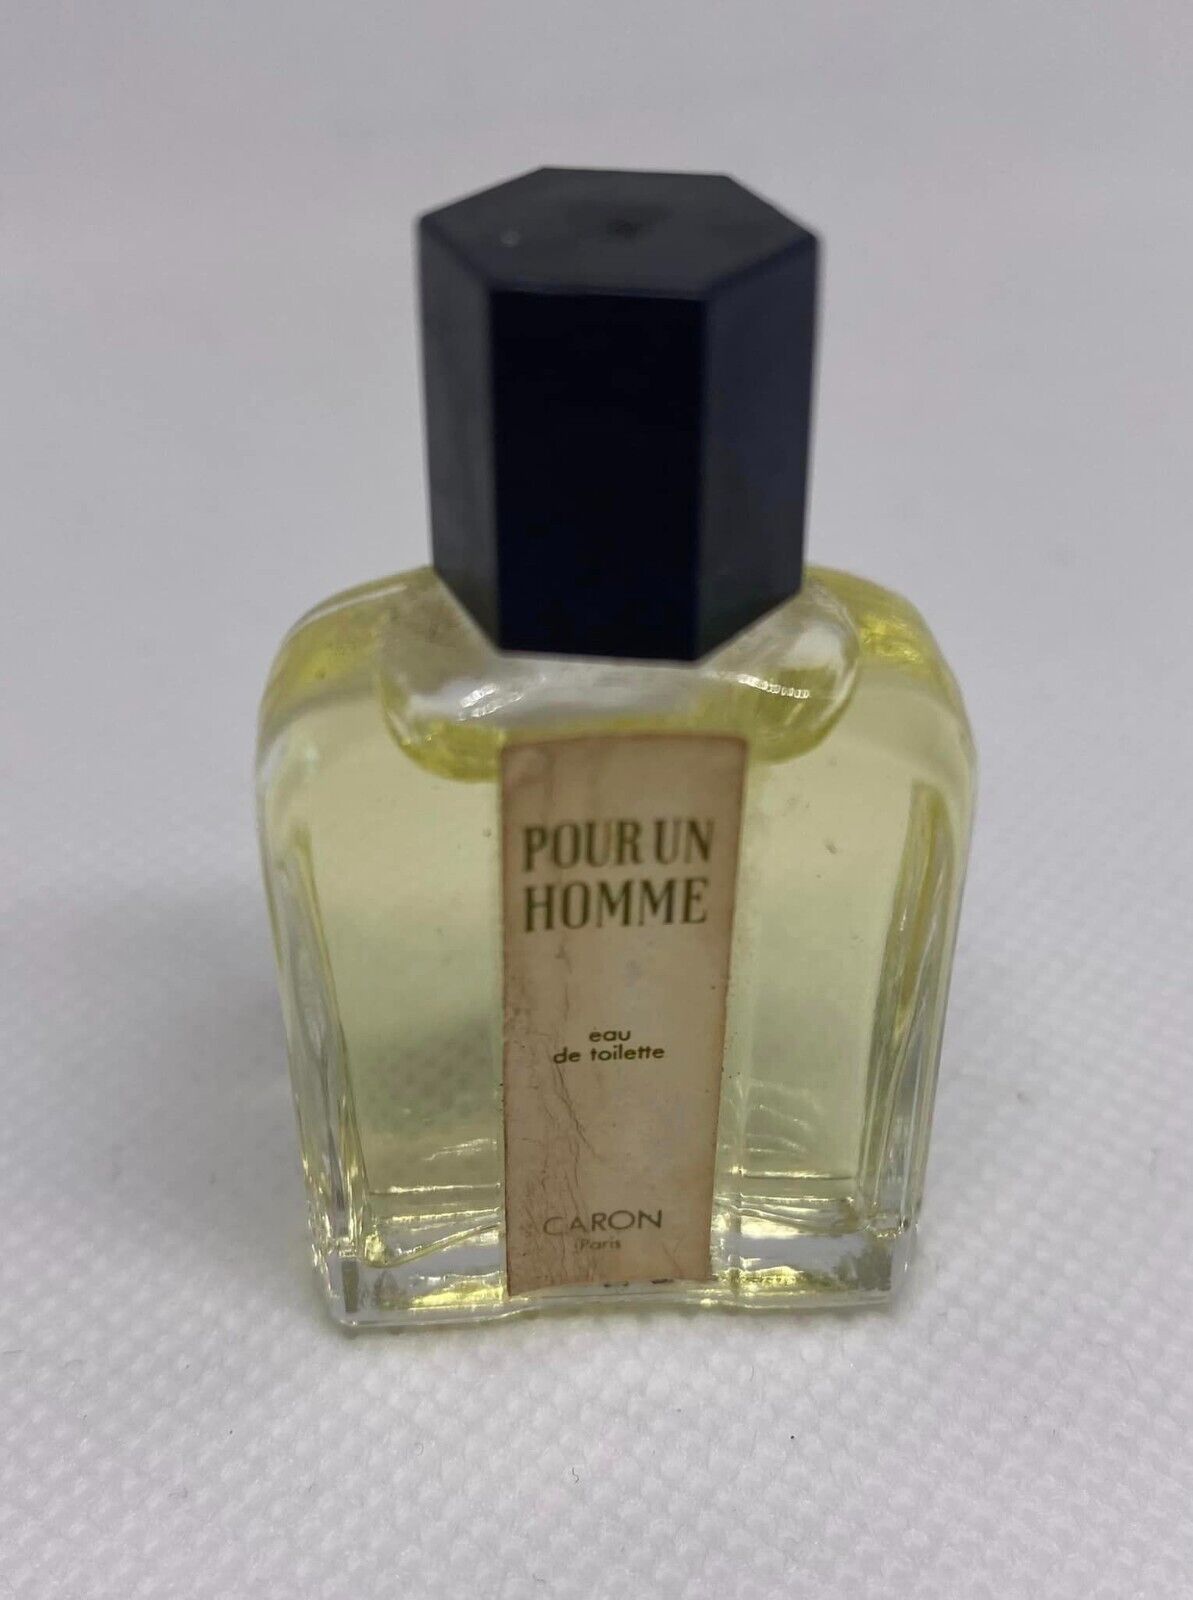 Pour Homme by Caron Eau de Toilette Perfume Miniature Parfum Profumo Mini